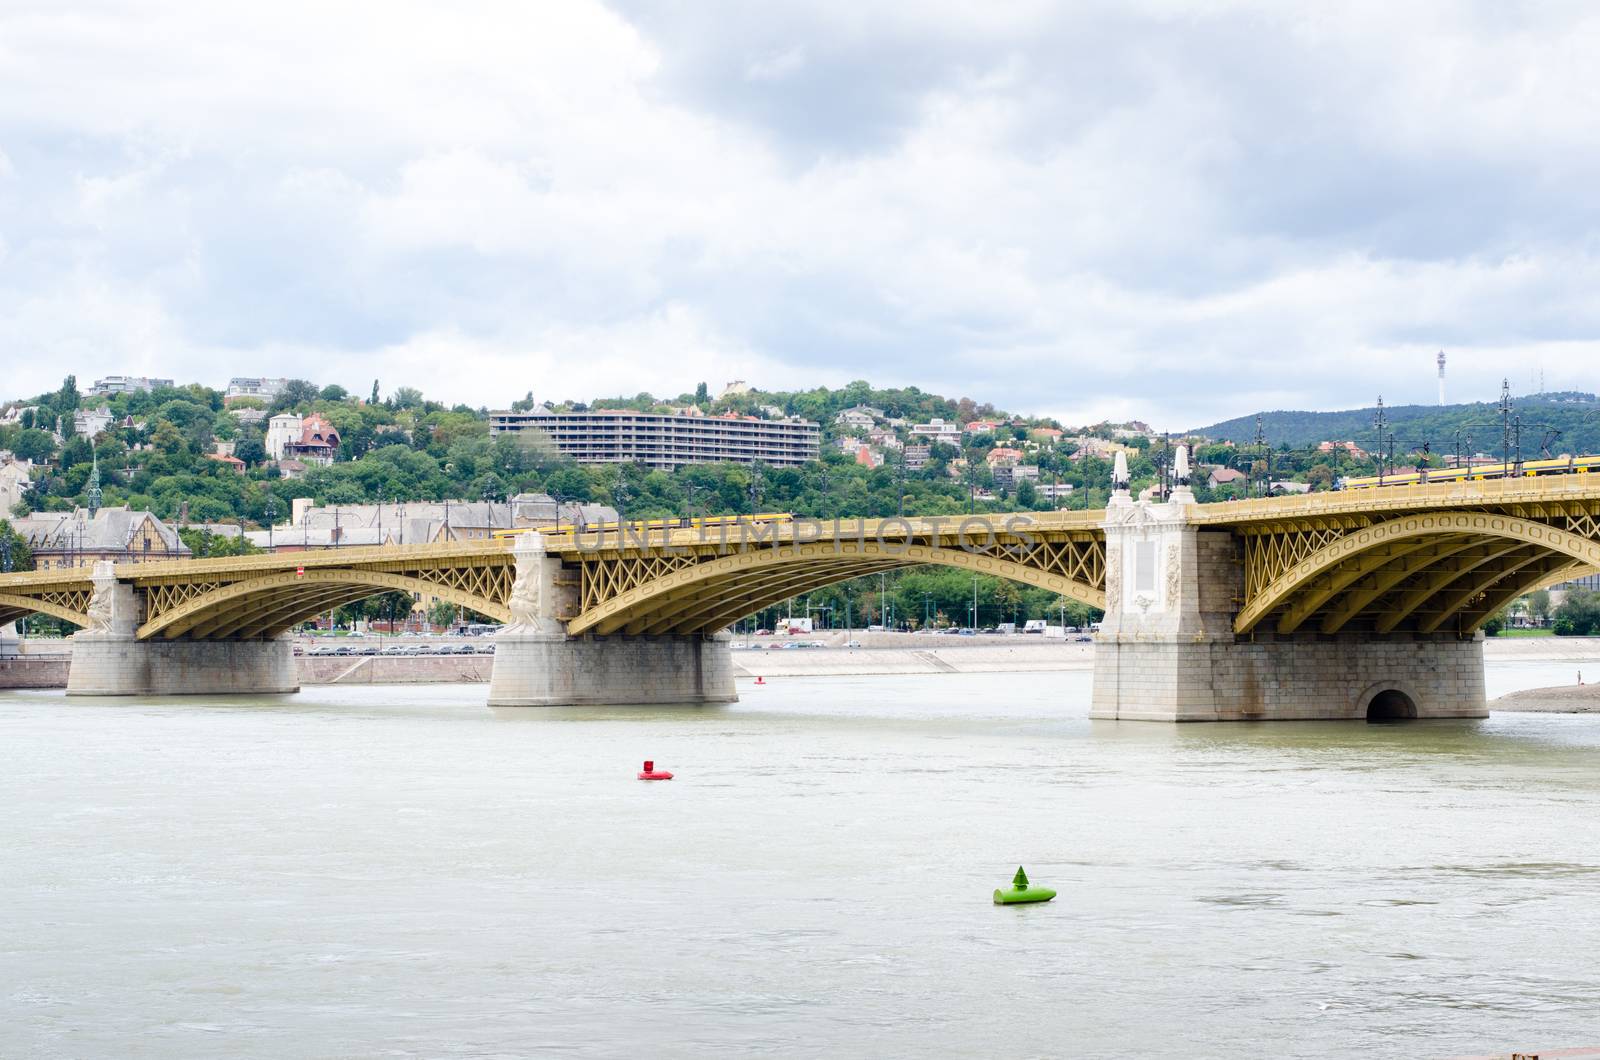 Margit hid- margaret bridge in Budapest, Hungary